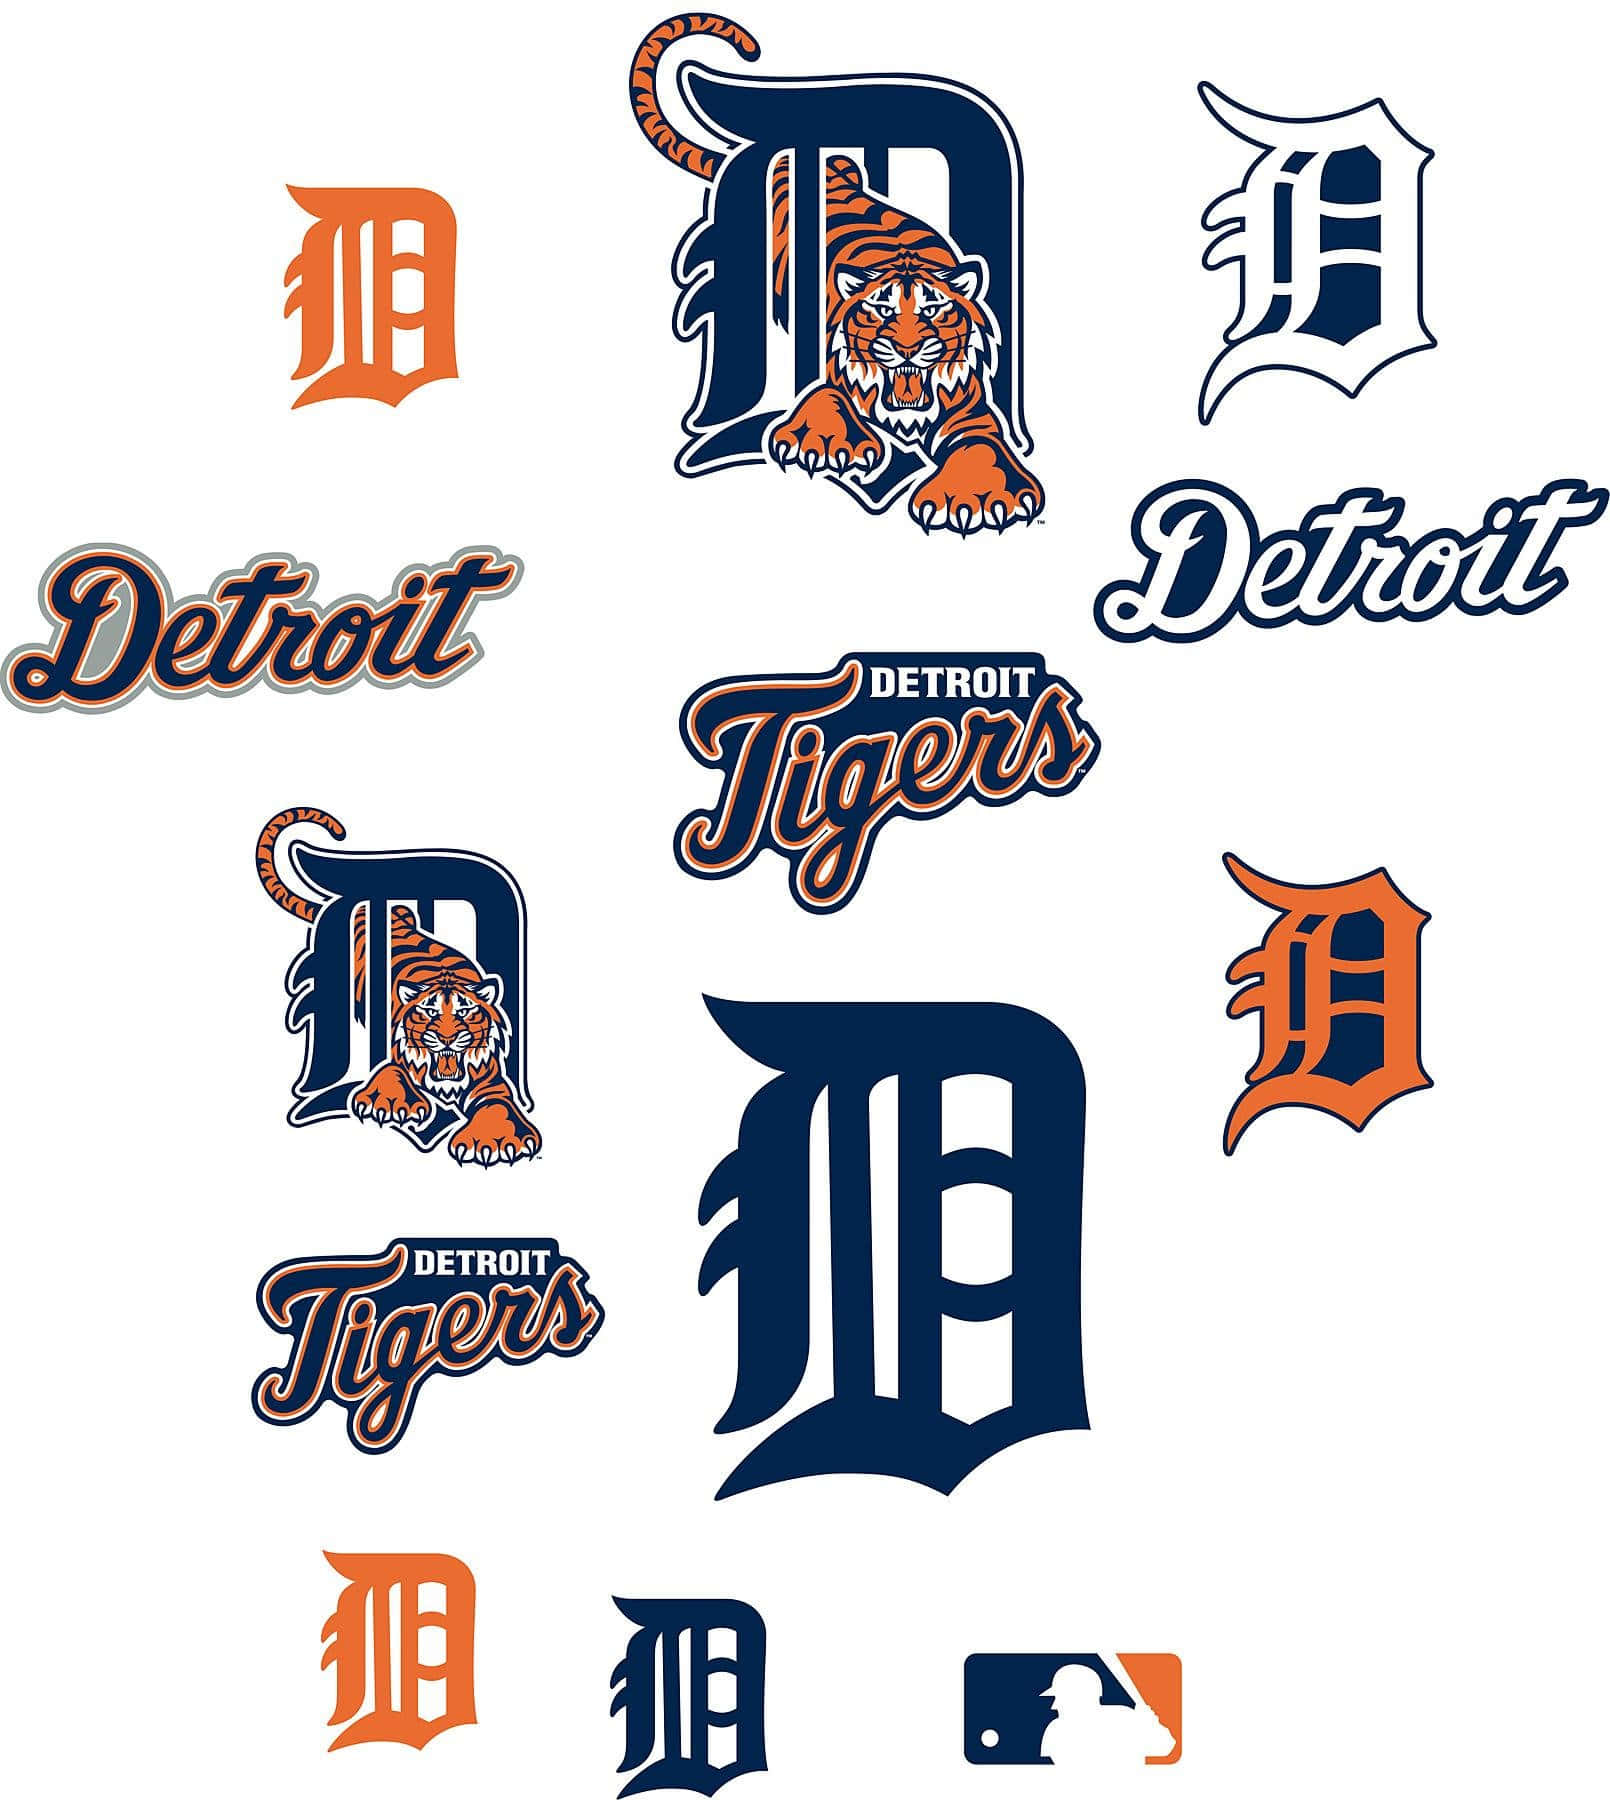 Varianter af Detroit Tigers logo invaderer din skærm. Wallpaper